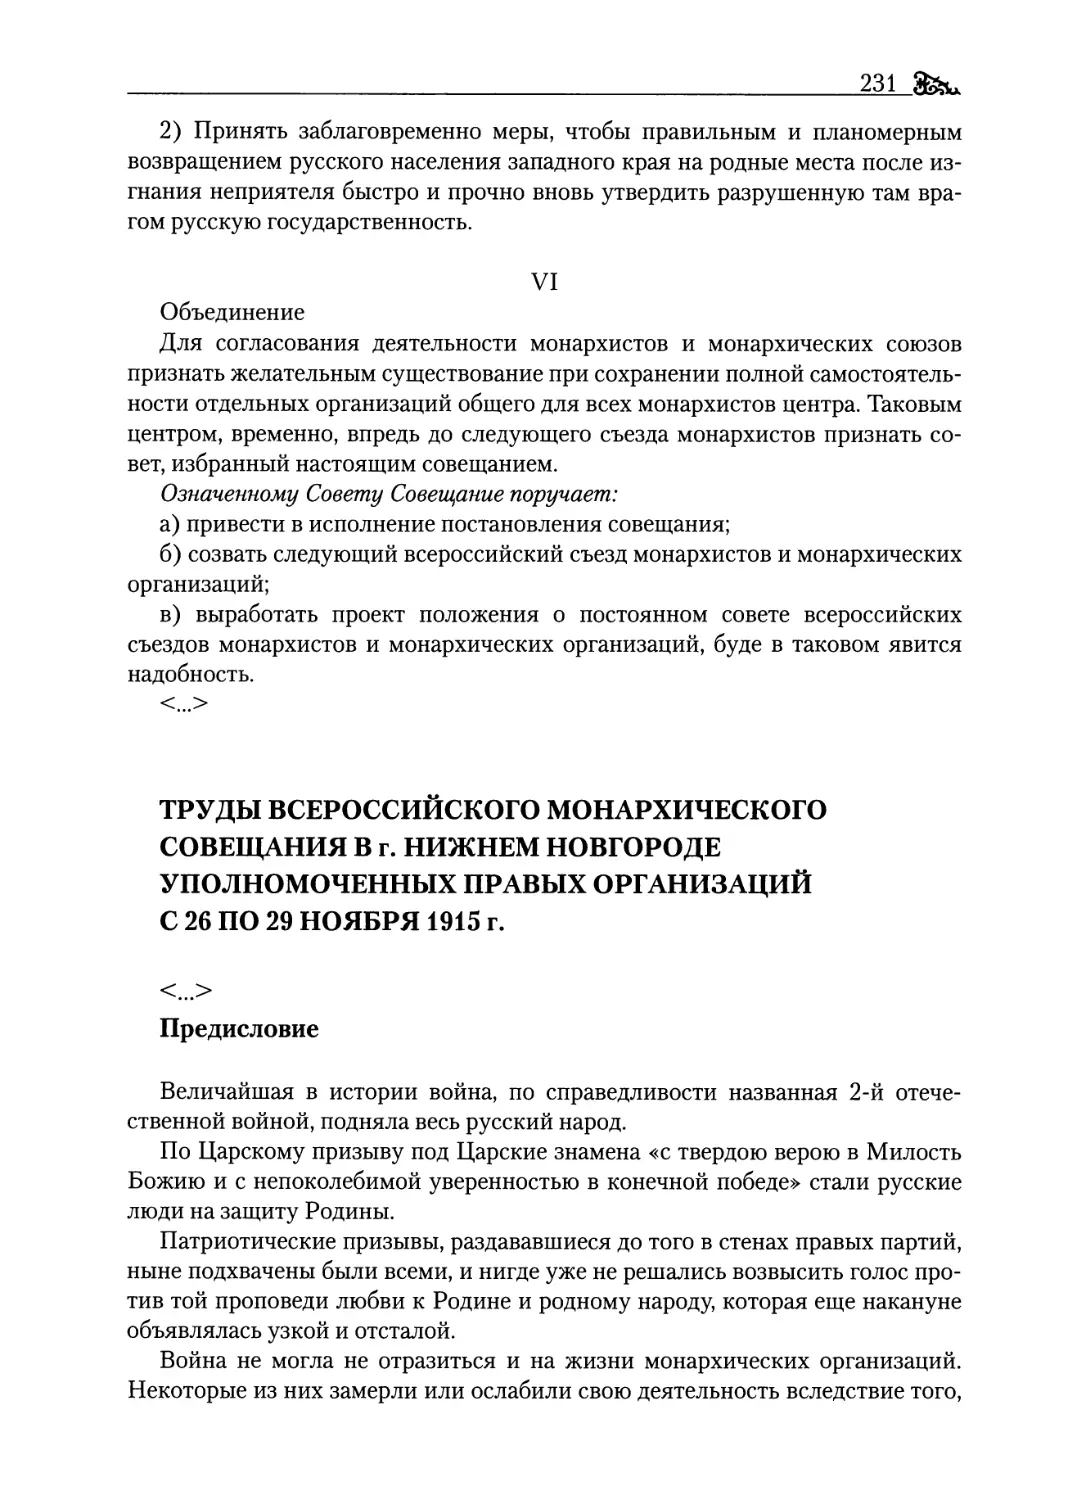 Труды Всероссийского монархического совещания в г. Нижнем Новгороде уполномоченных правых организаций с 26 по 29 ноября 1915 г